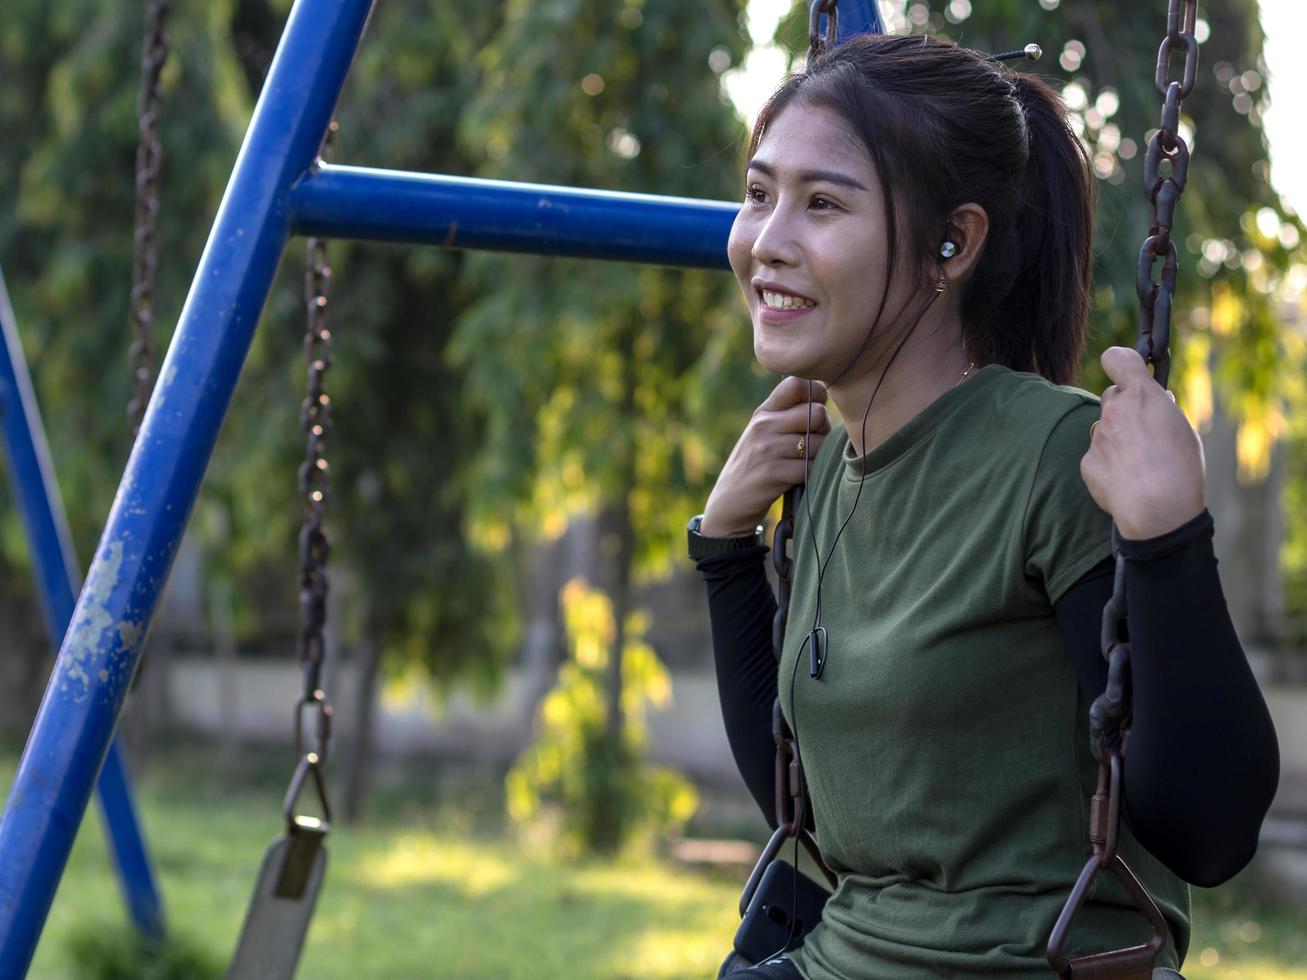 adolescente sentada en una cadena de columpio sonriendo. foto